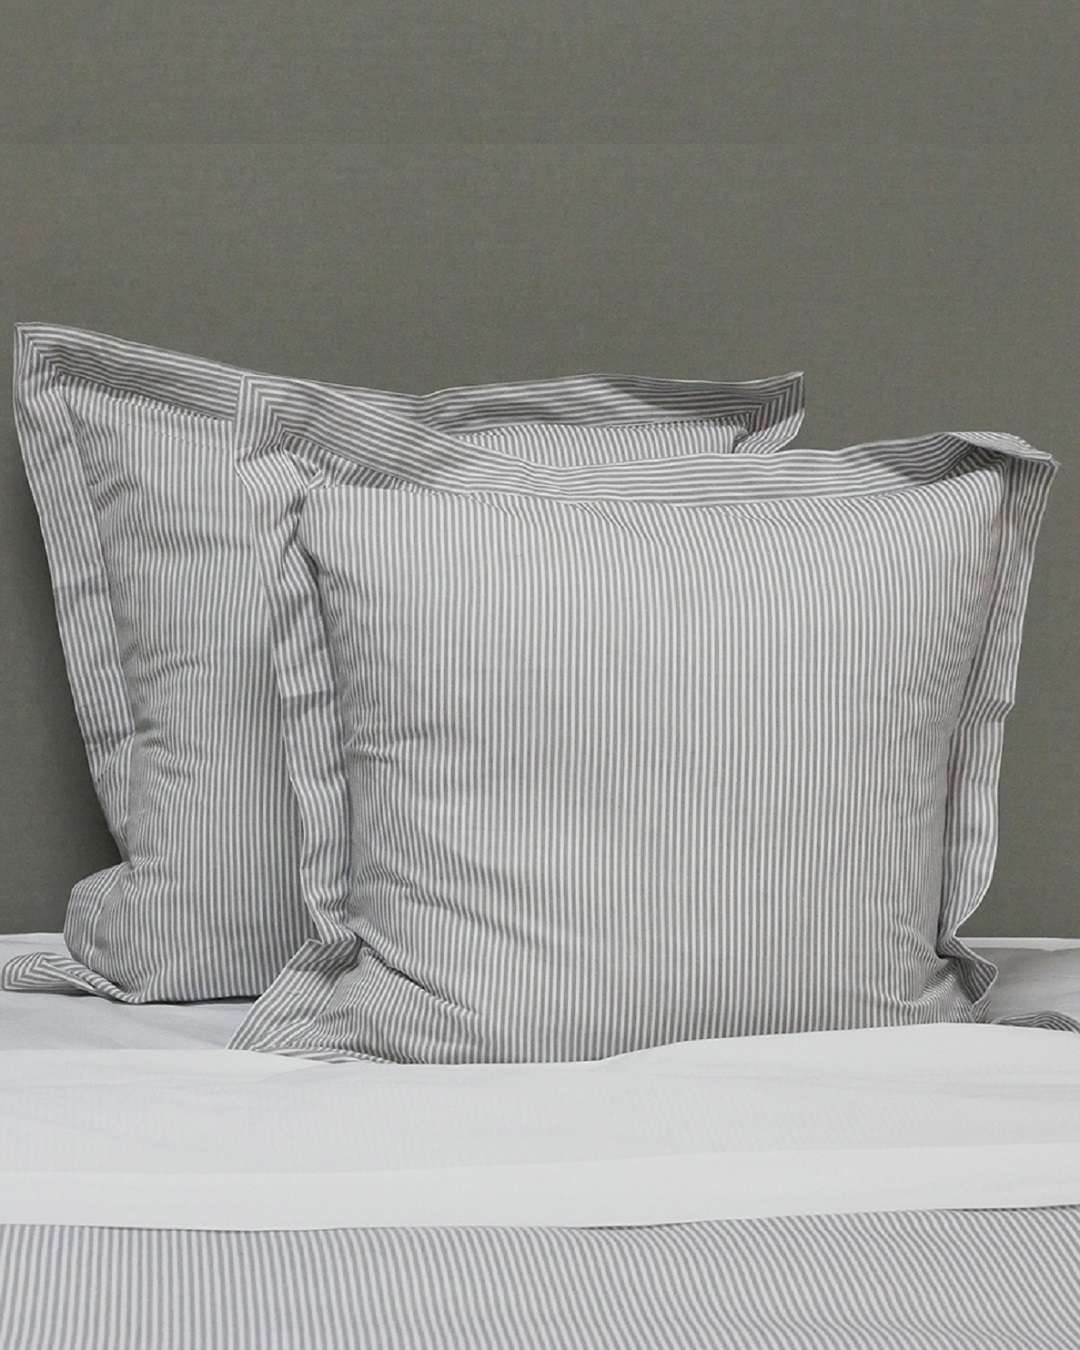 Black stripe euro pillows on bed